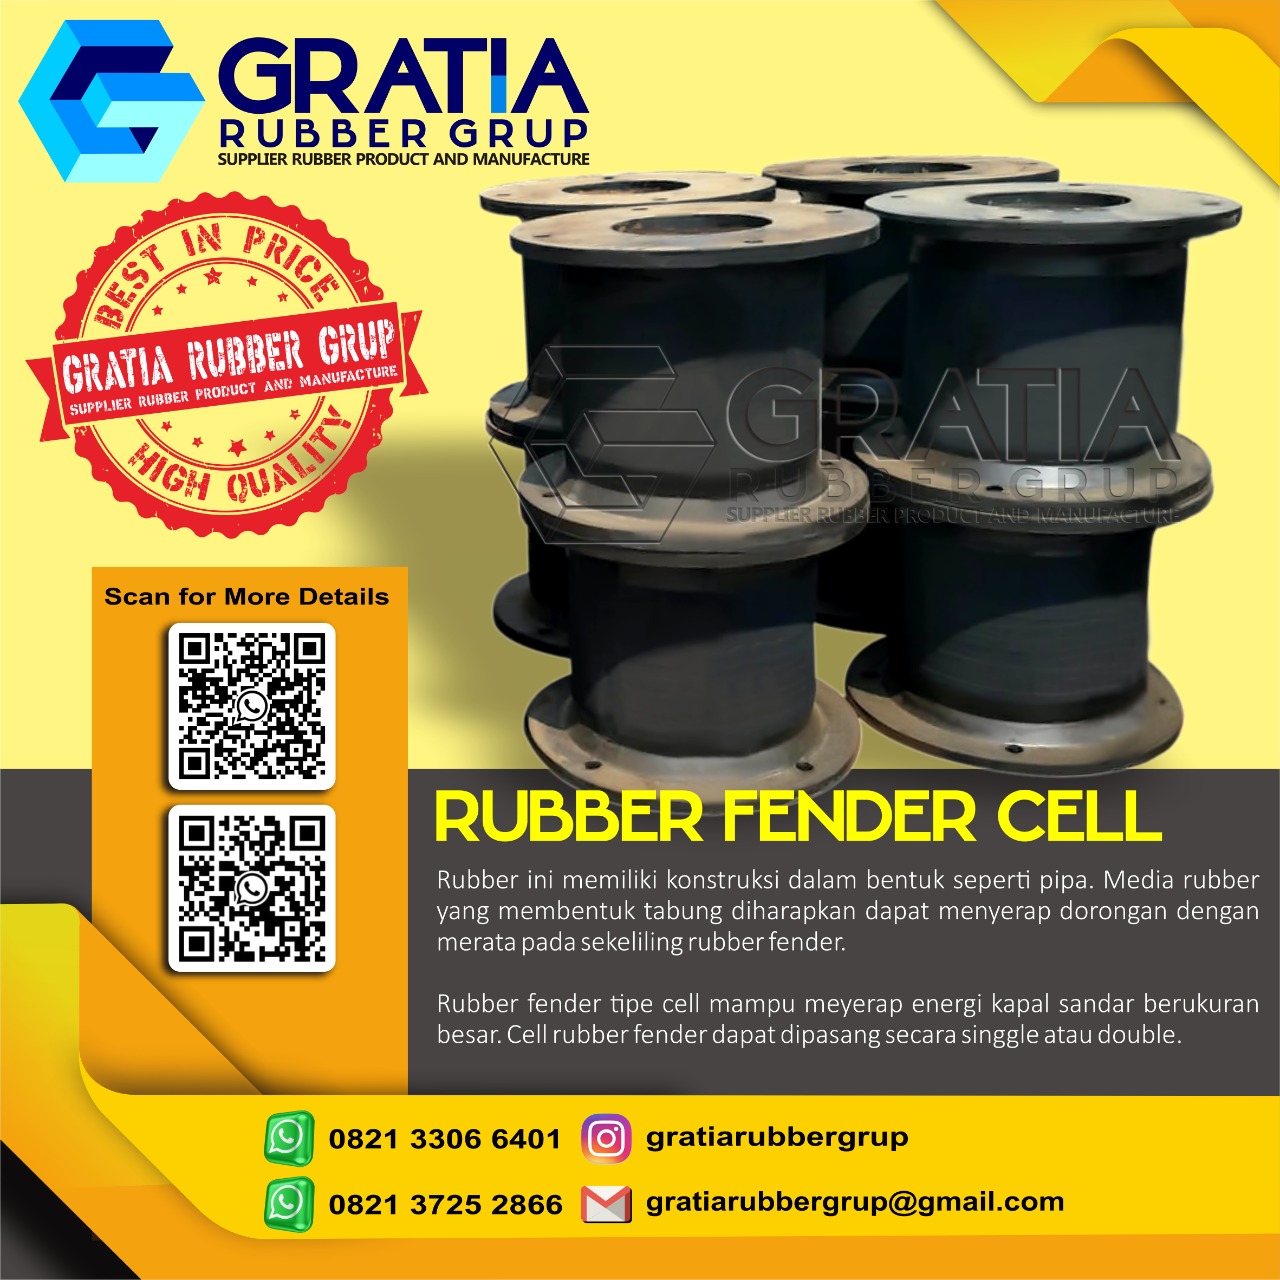 Distributor Rubber Fender Boat Murah Dan Berkualitas  Melayani Pengiriman Ke Prabumulih Sumatera Selatan Hub 0821 3306 0461